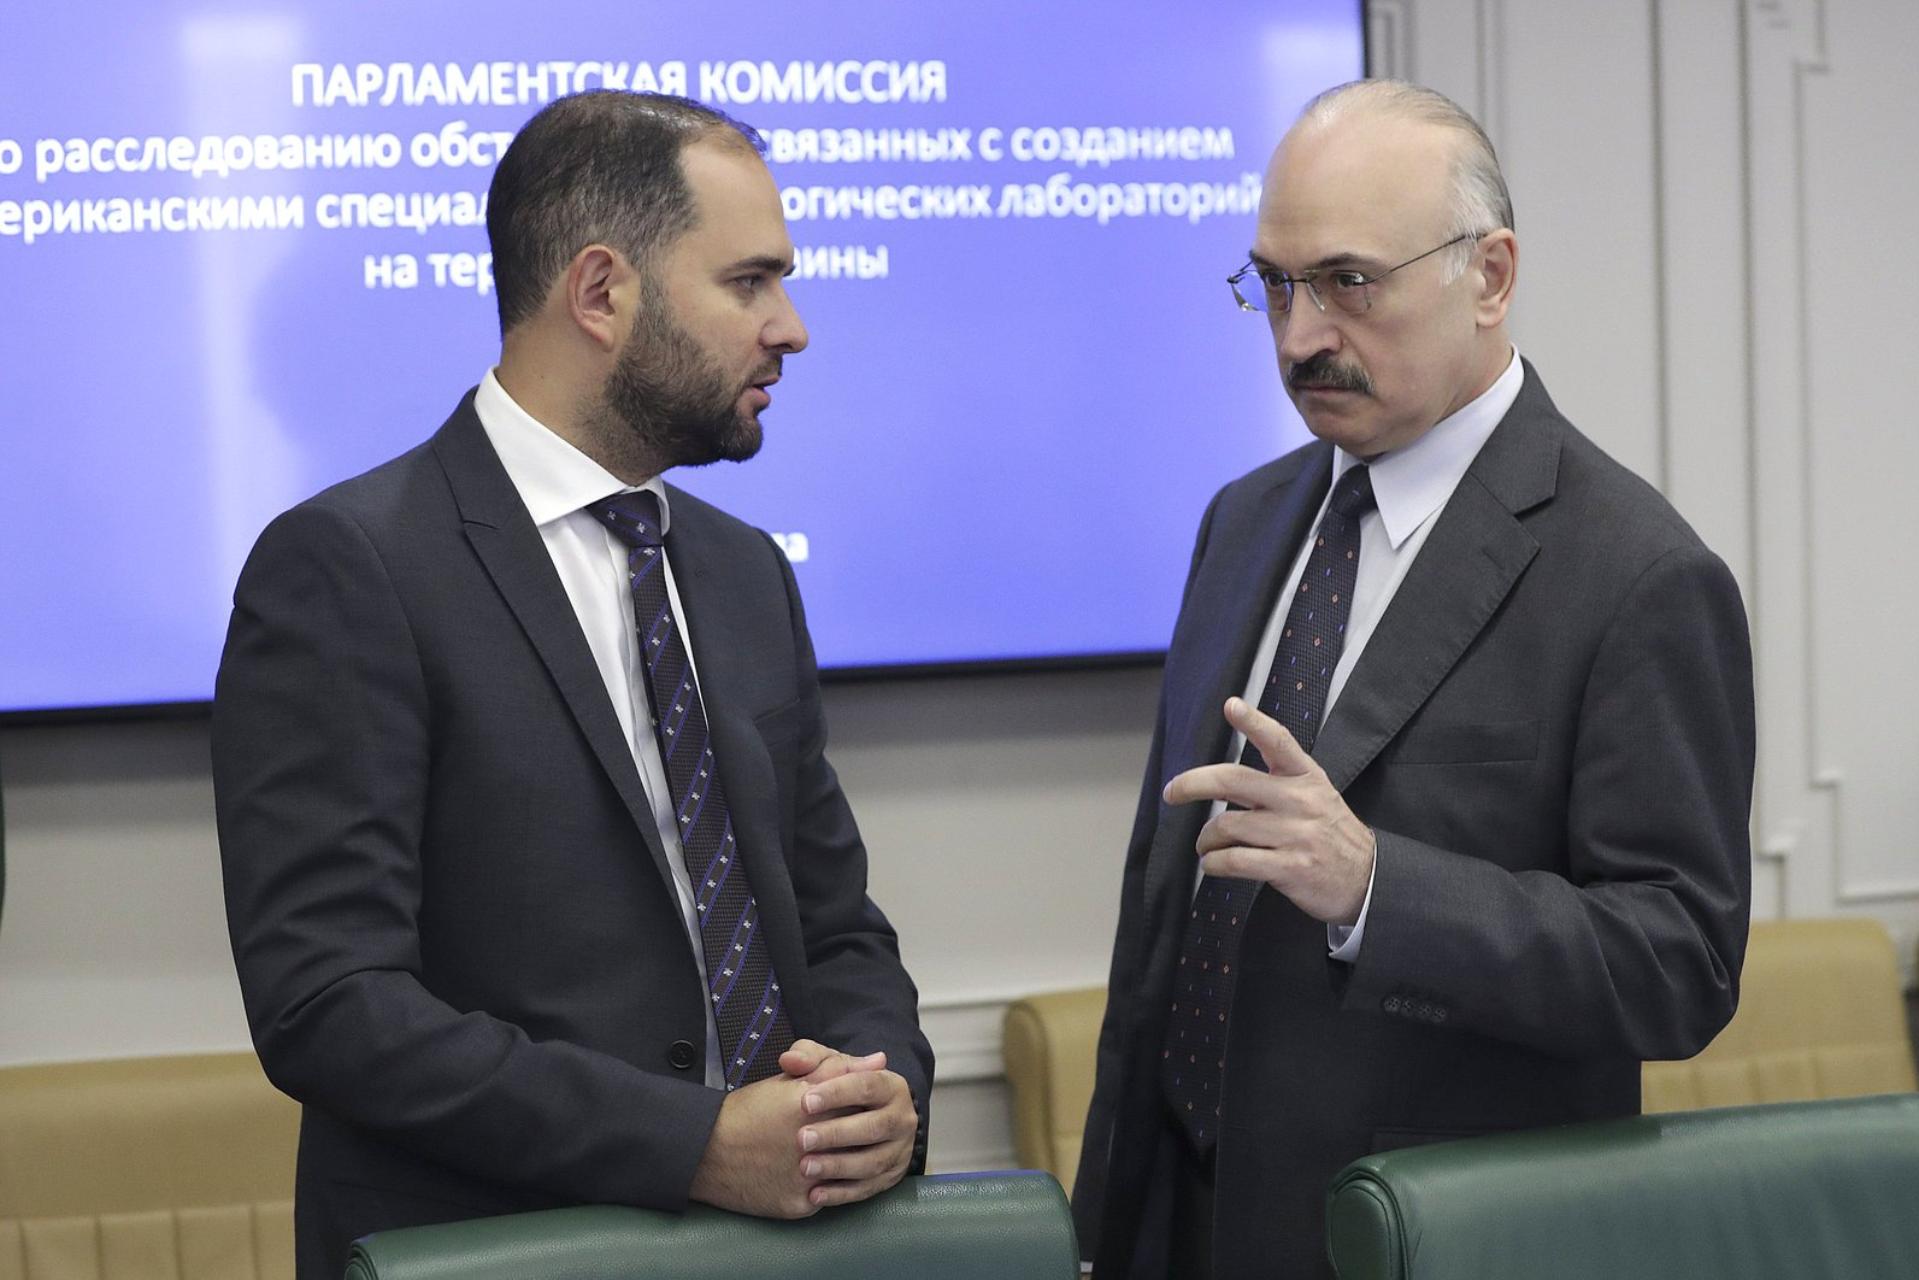 Заседание Парламентской комиссии по расследованию обстоятельств, связанных с созданием американскими специалистами биолабораторий на территории Украины